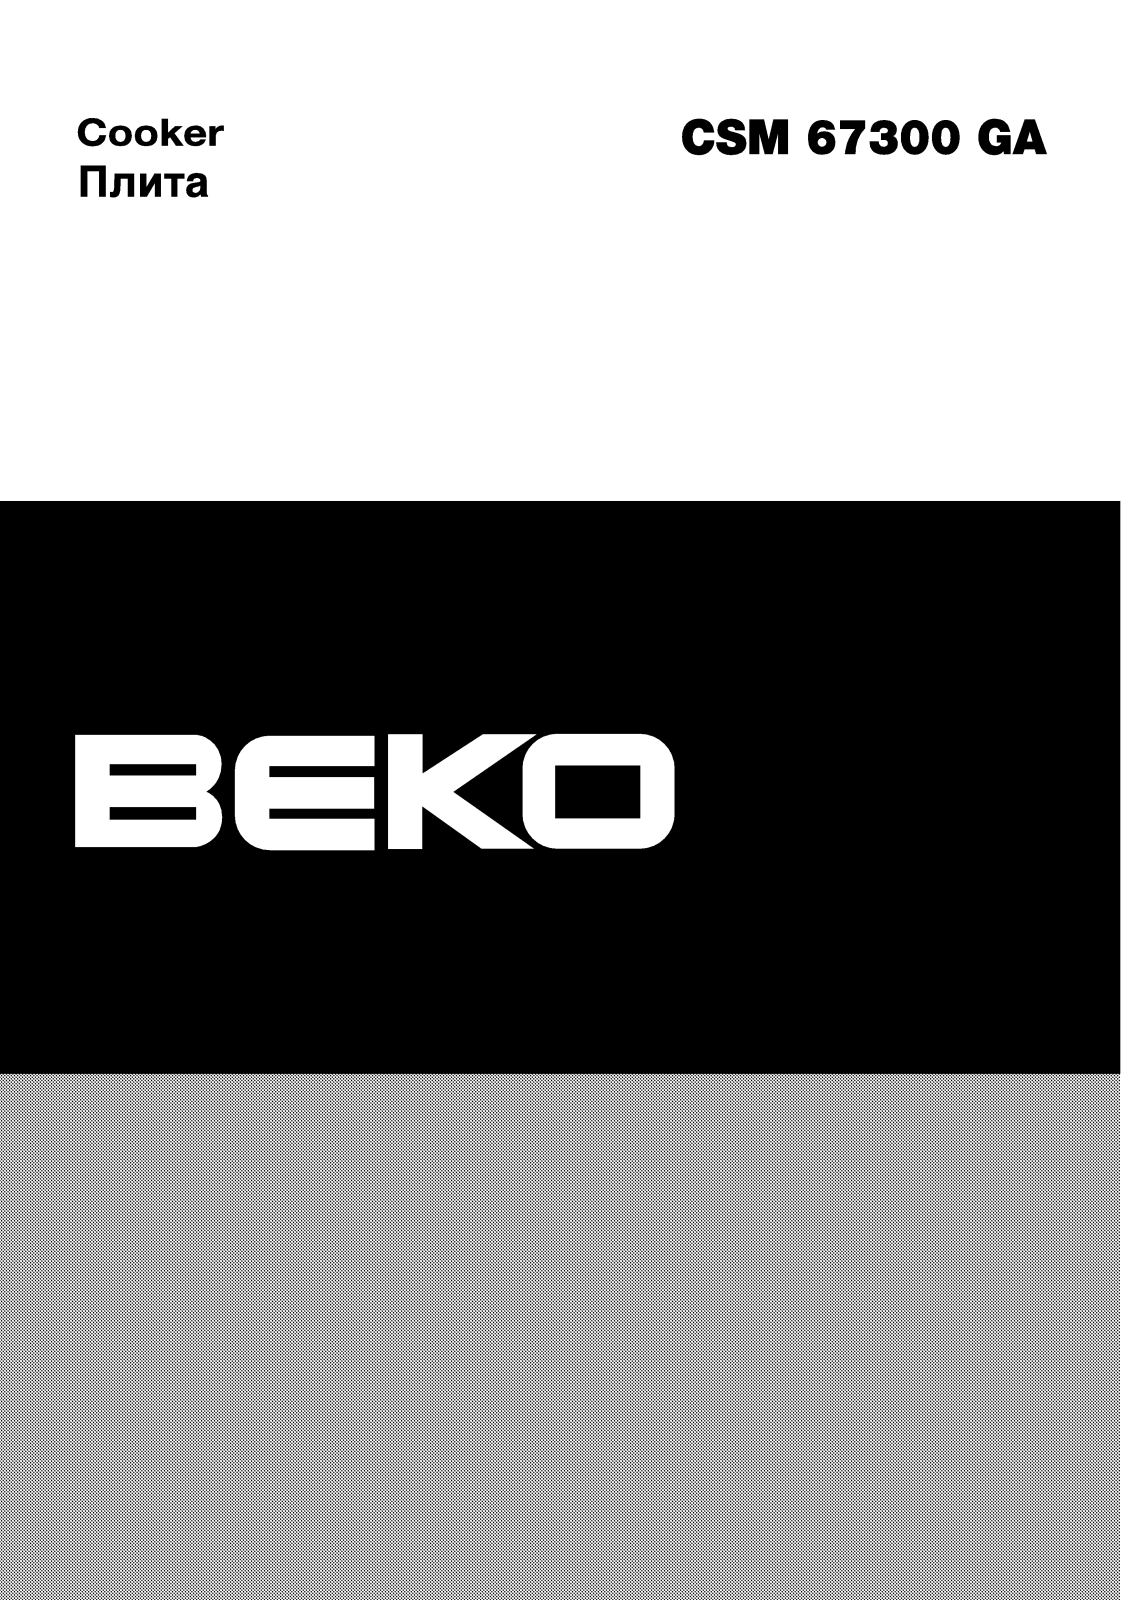 Beko CSM 67300 GA User Manual